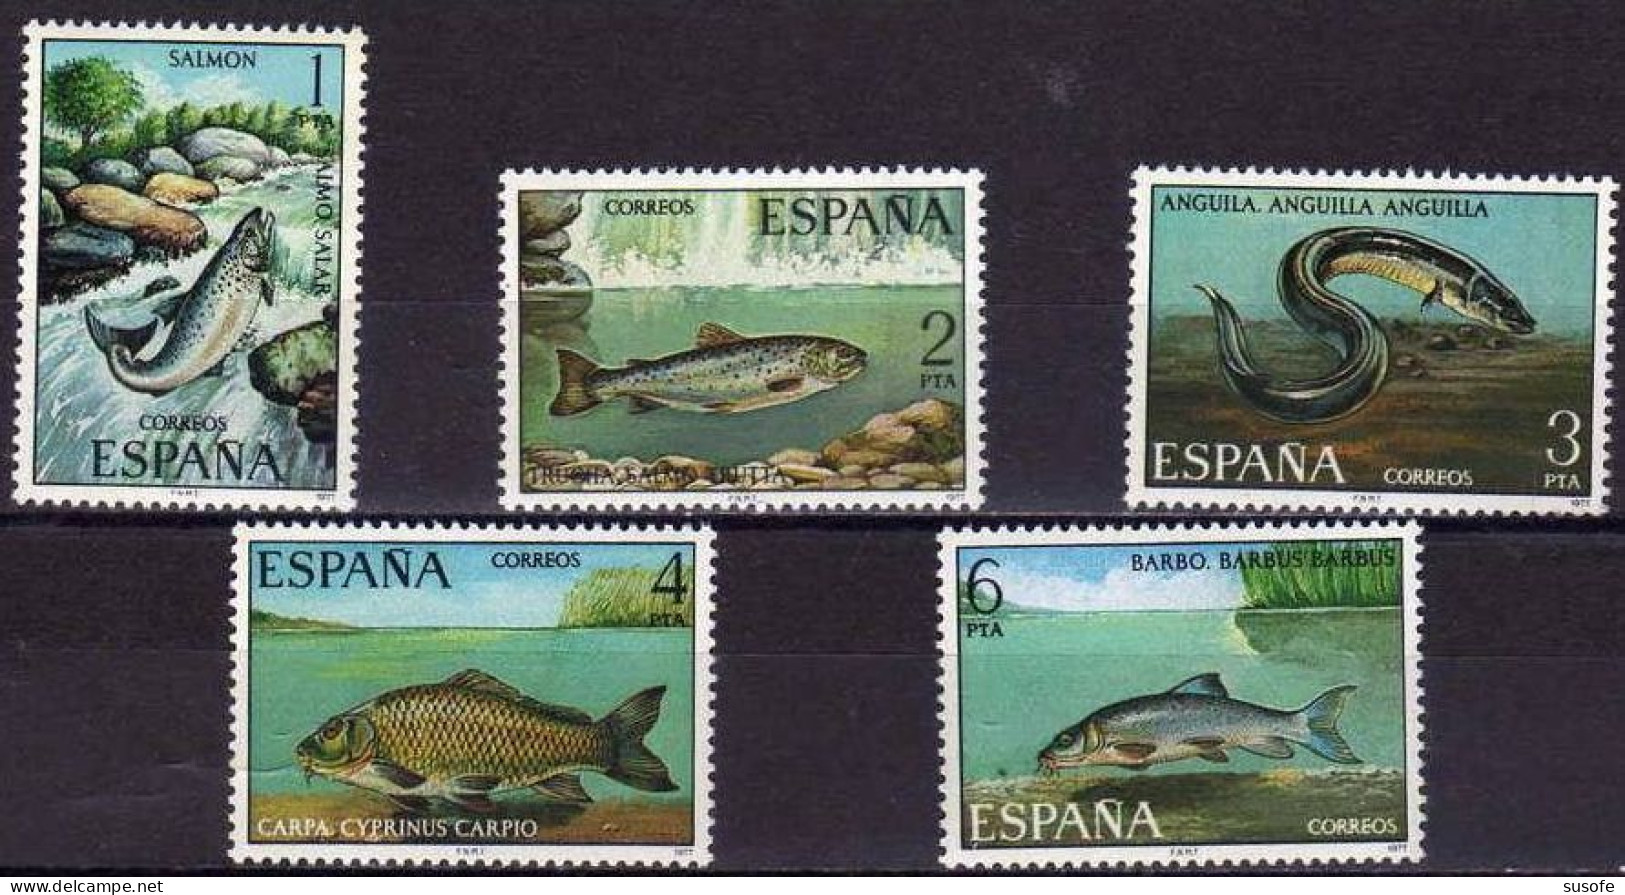 España 1977 Edifil 2403/7 Sellos ** Fauna Hispanica Peces Salmón (Salmo Salar), Trucha (Salmo Trutta), Anguila (Anguilla - Unused Stamps